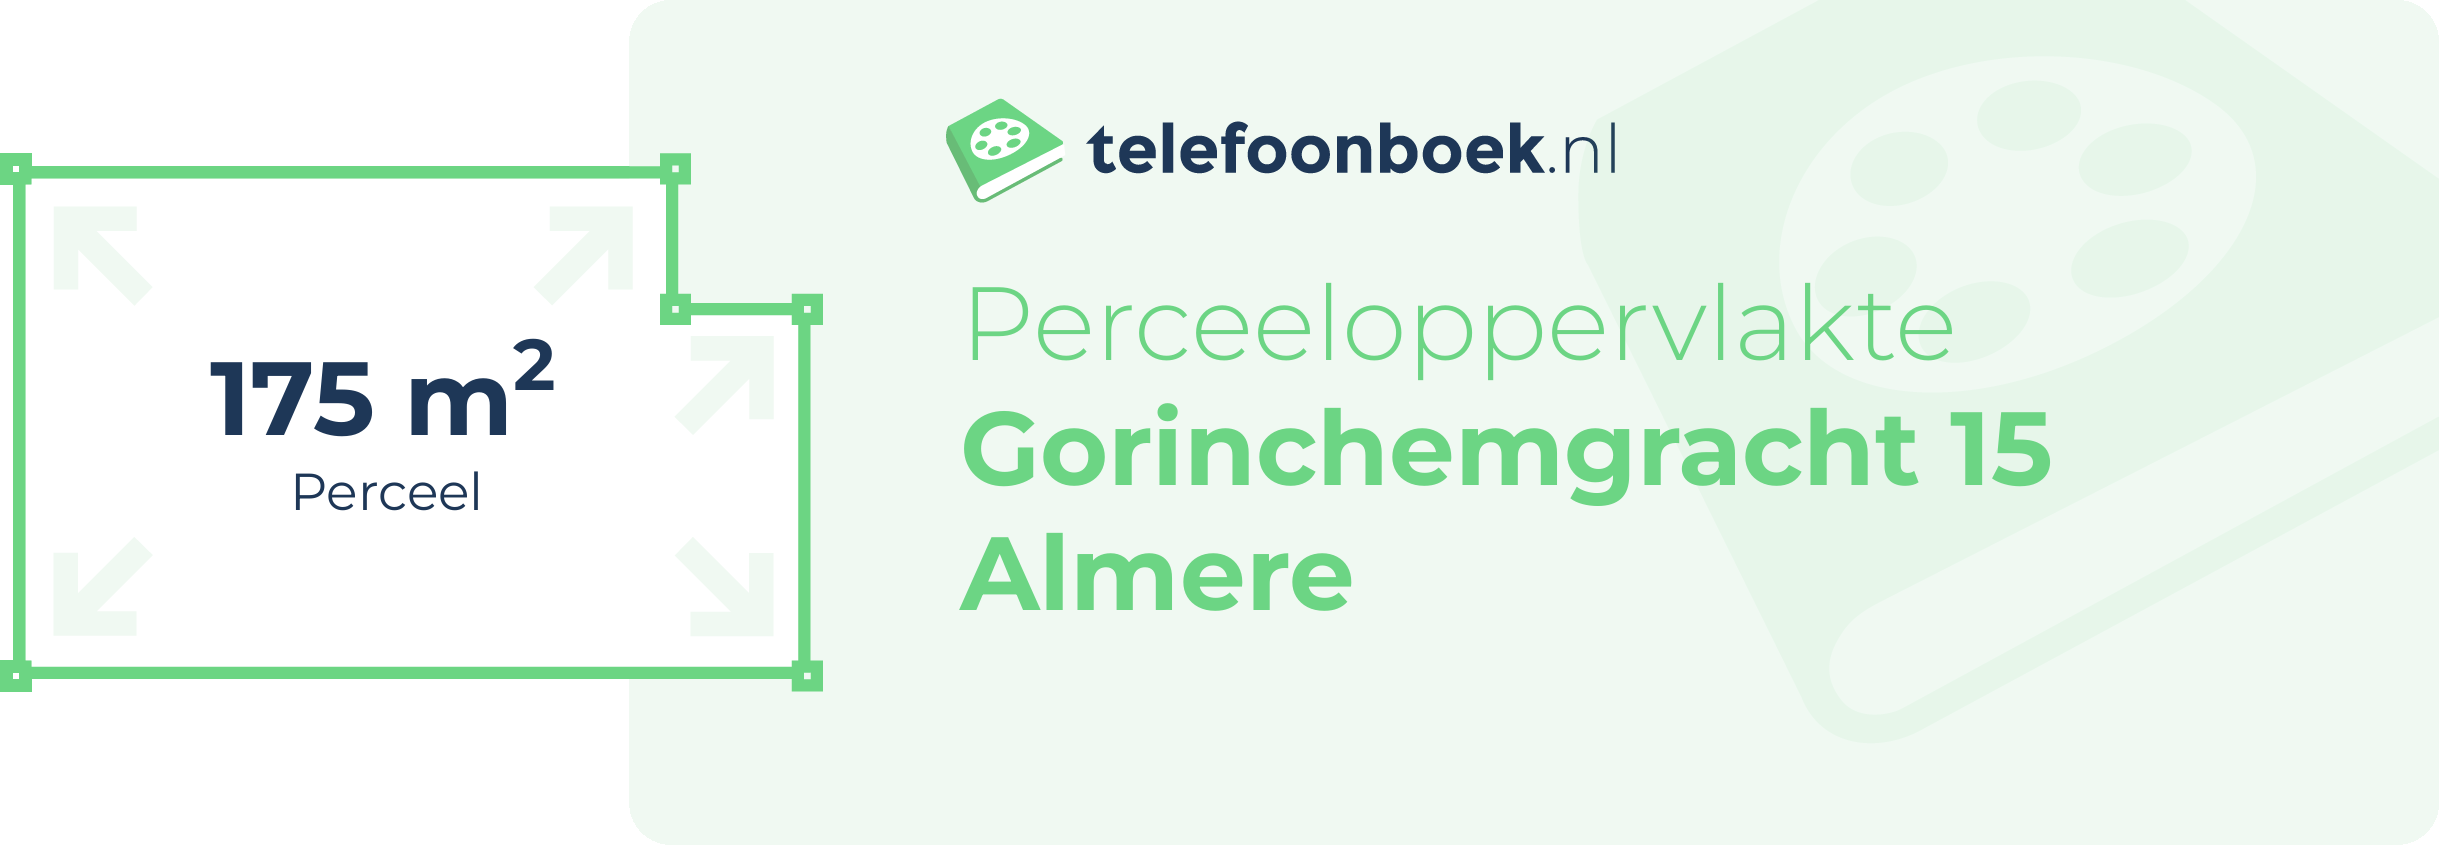 Perceeloppervlakte Gorinchemgracht 15 Almere